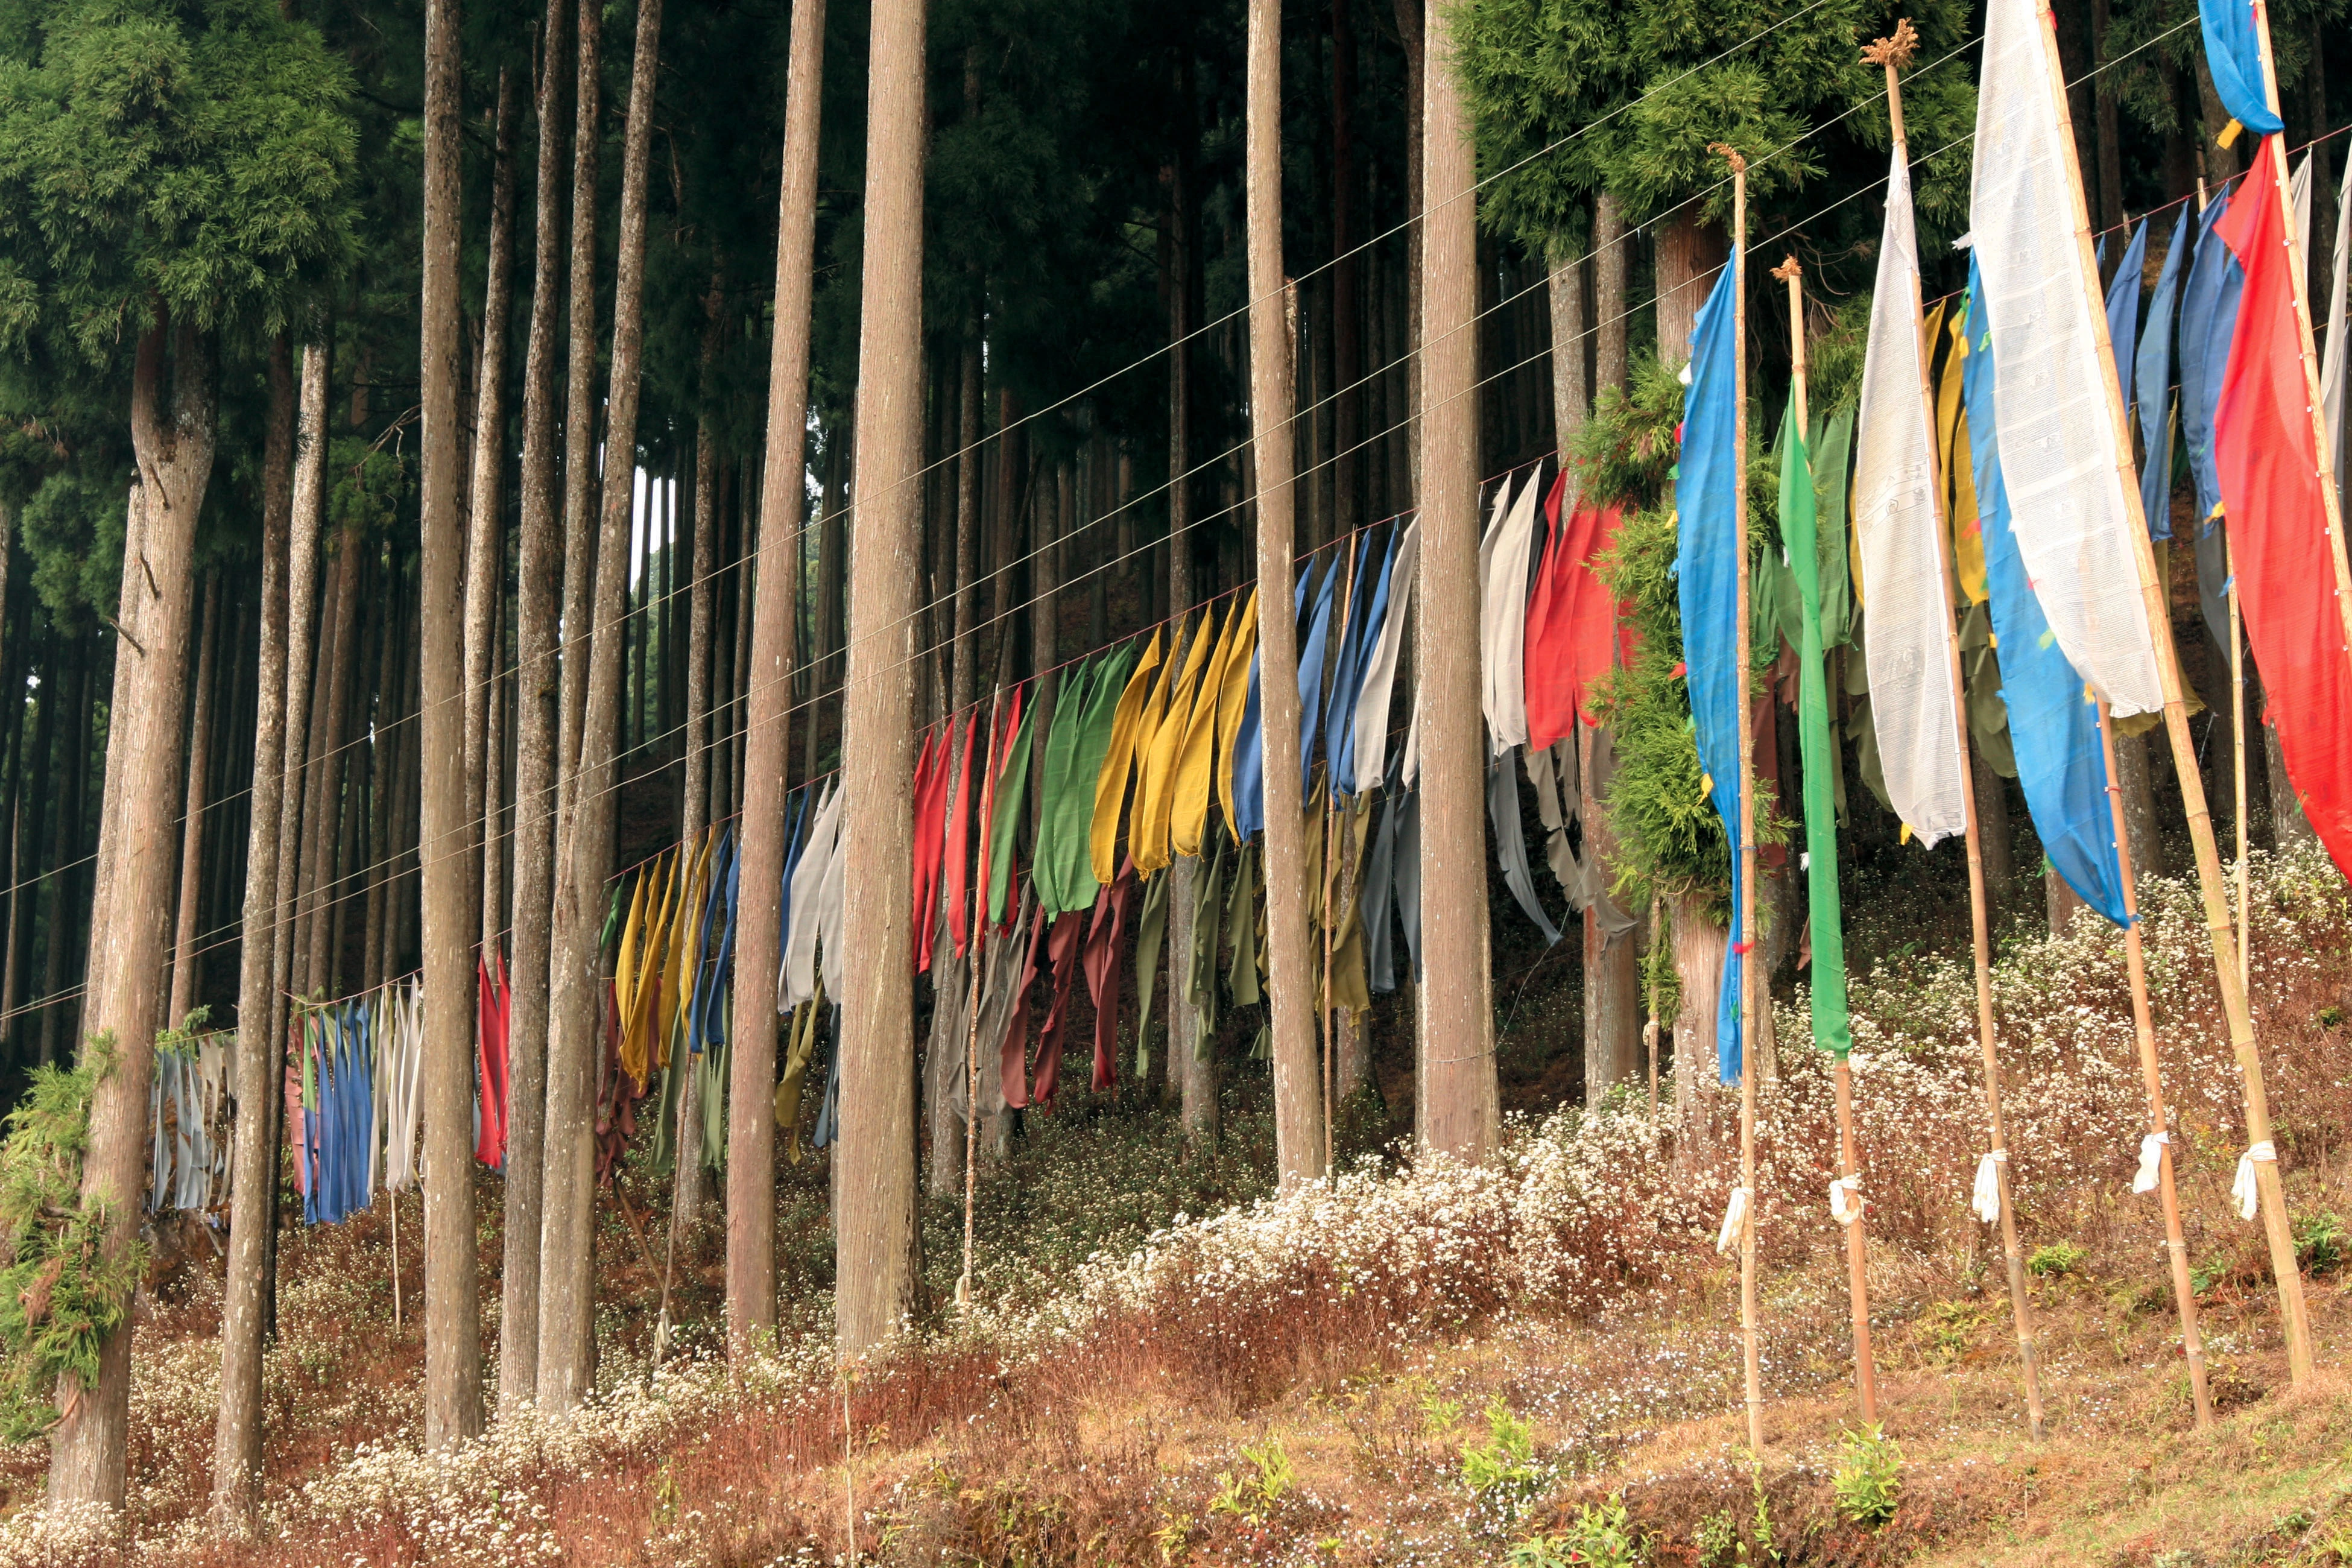 Bhuddist prayer flags [Image via Travel Journalist, Subhasish Chakraborty].